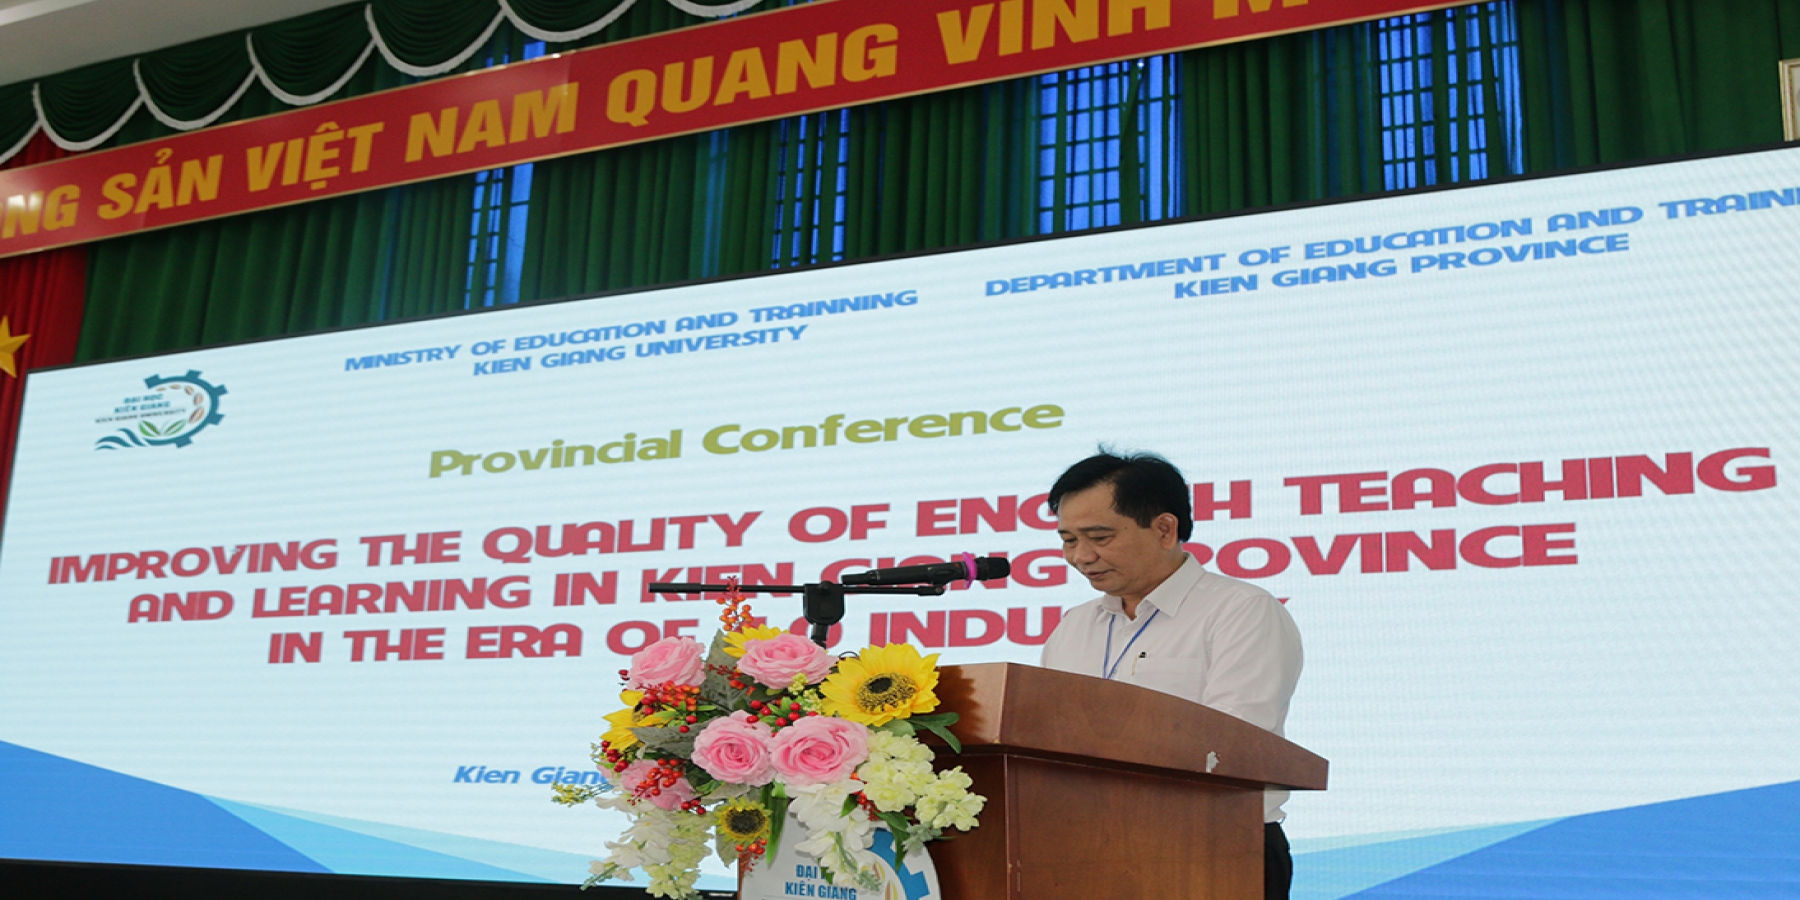 Hội thảo khoa học về nâng cao chất lượng dạy học tiếng Anh cho giảng viên, giáo viên trong tỉnh Kiên Giang